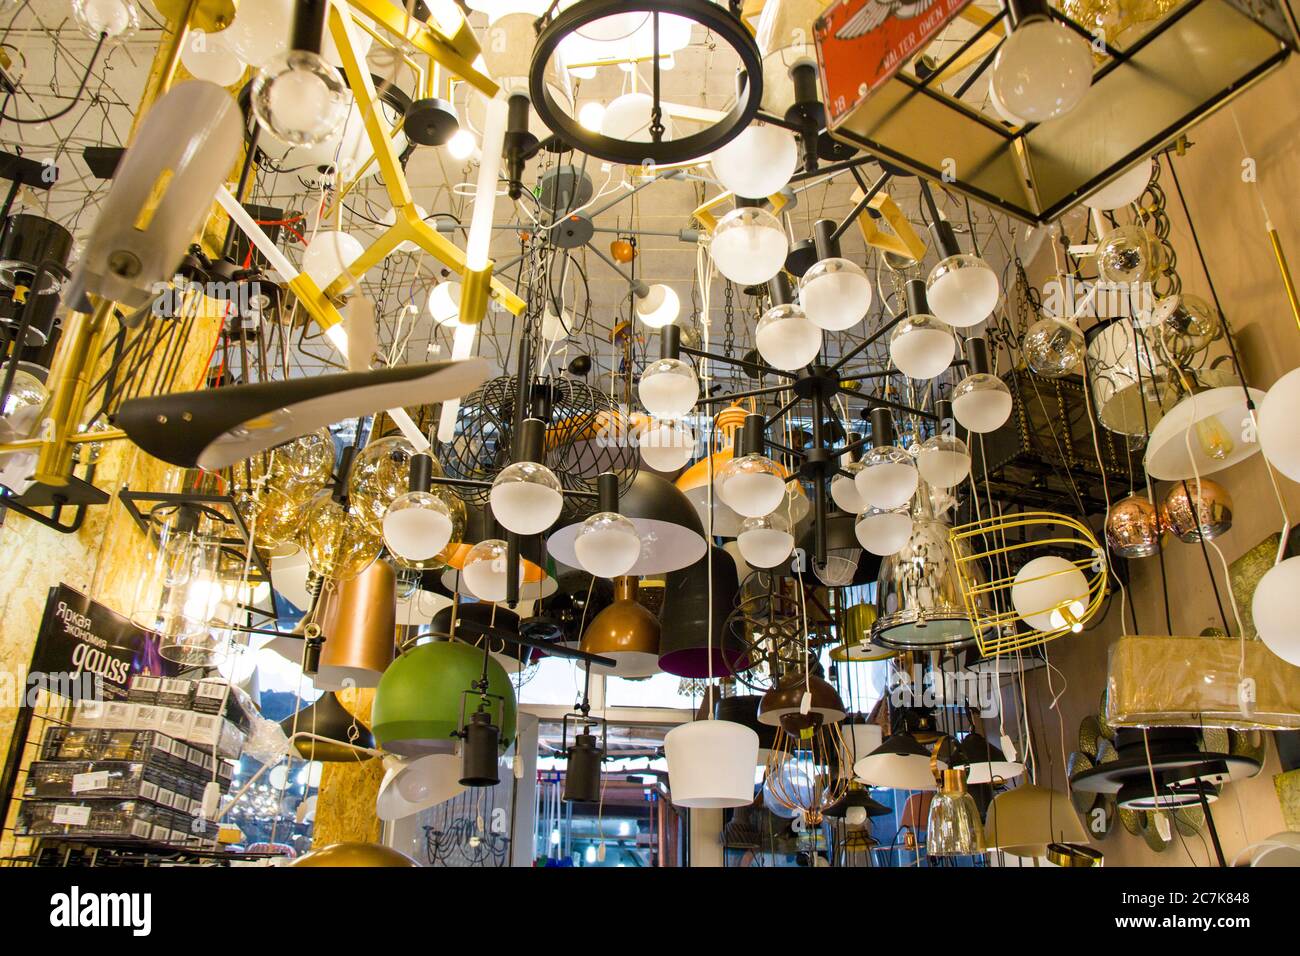 Große Gruppe von Lampen im Geschäft, Glühbirnen Hintergrund Stockfotografie  - Alamy